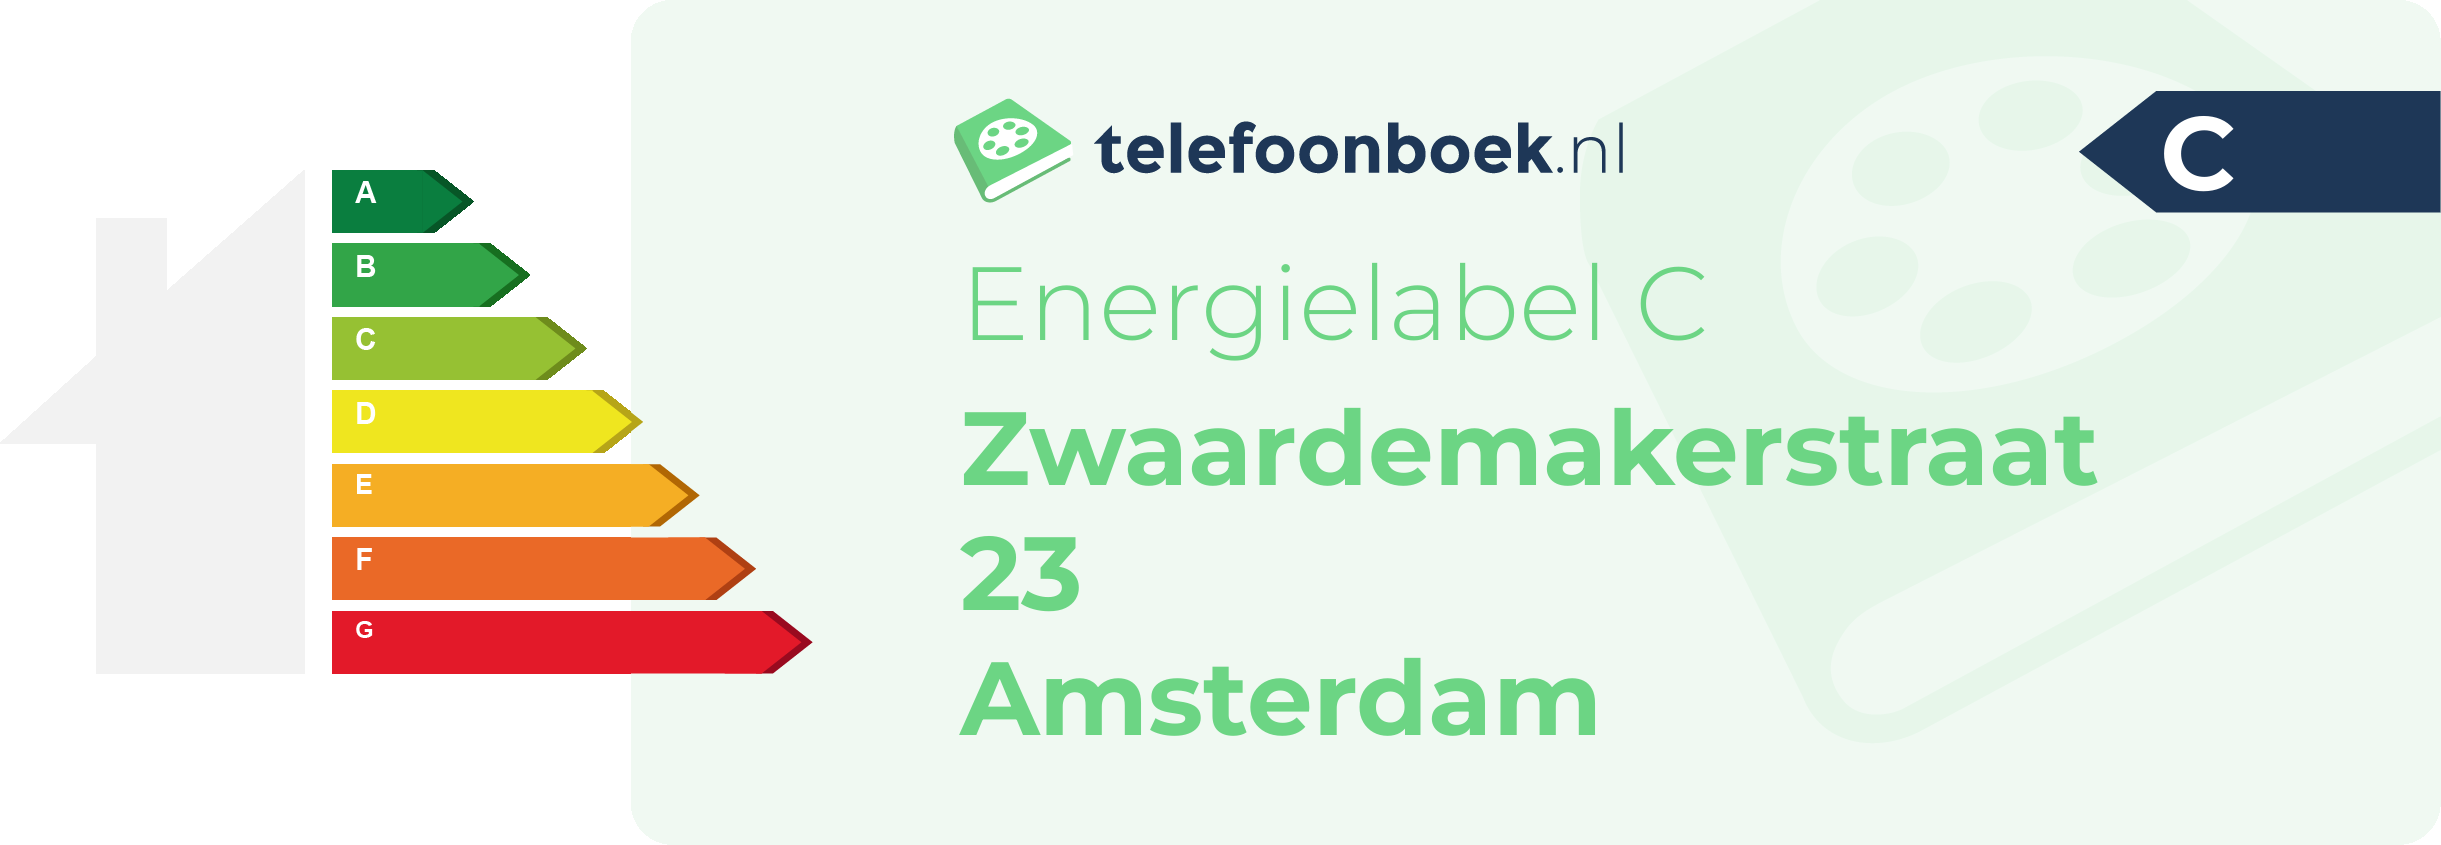 Energielabel Zwaardemakerstraat 23 Amsterdam